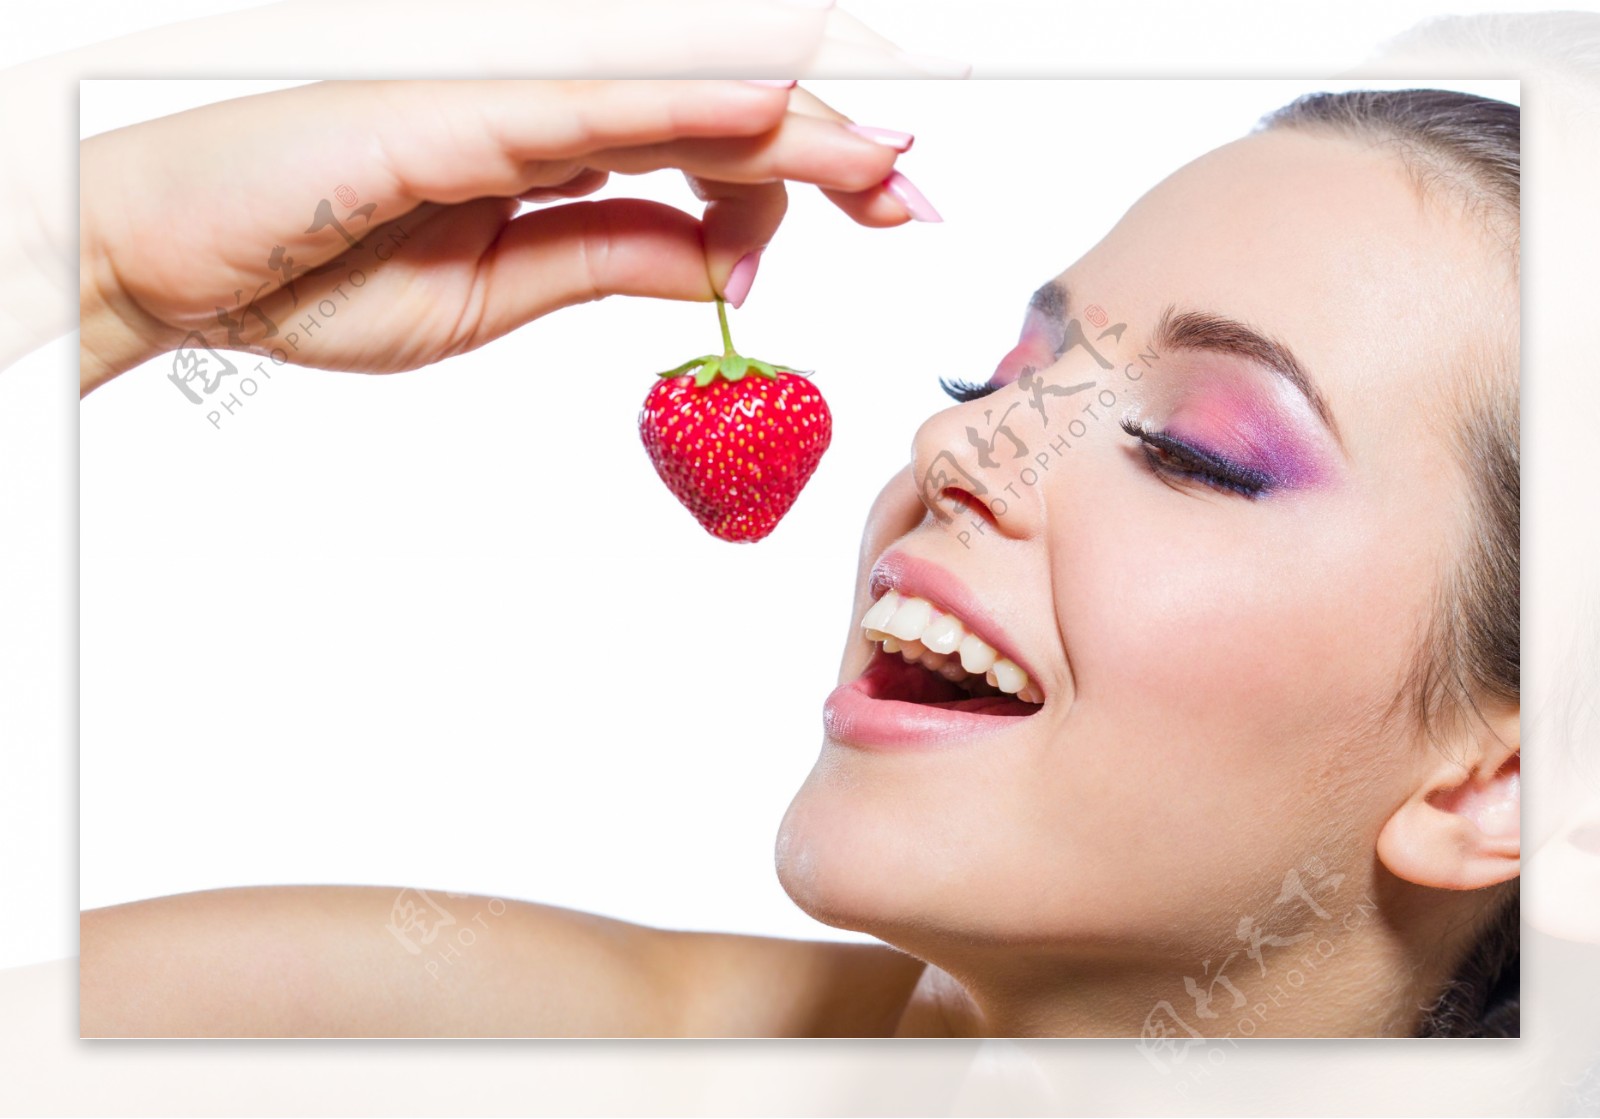 吃草莓的彩妆美女图片